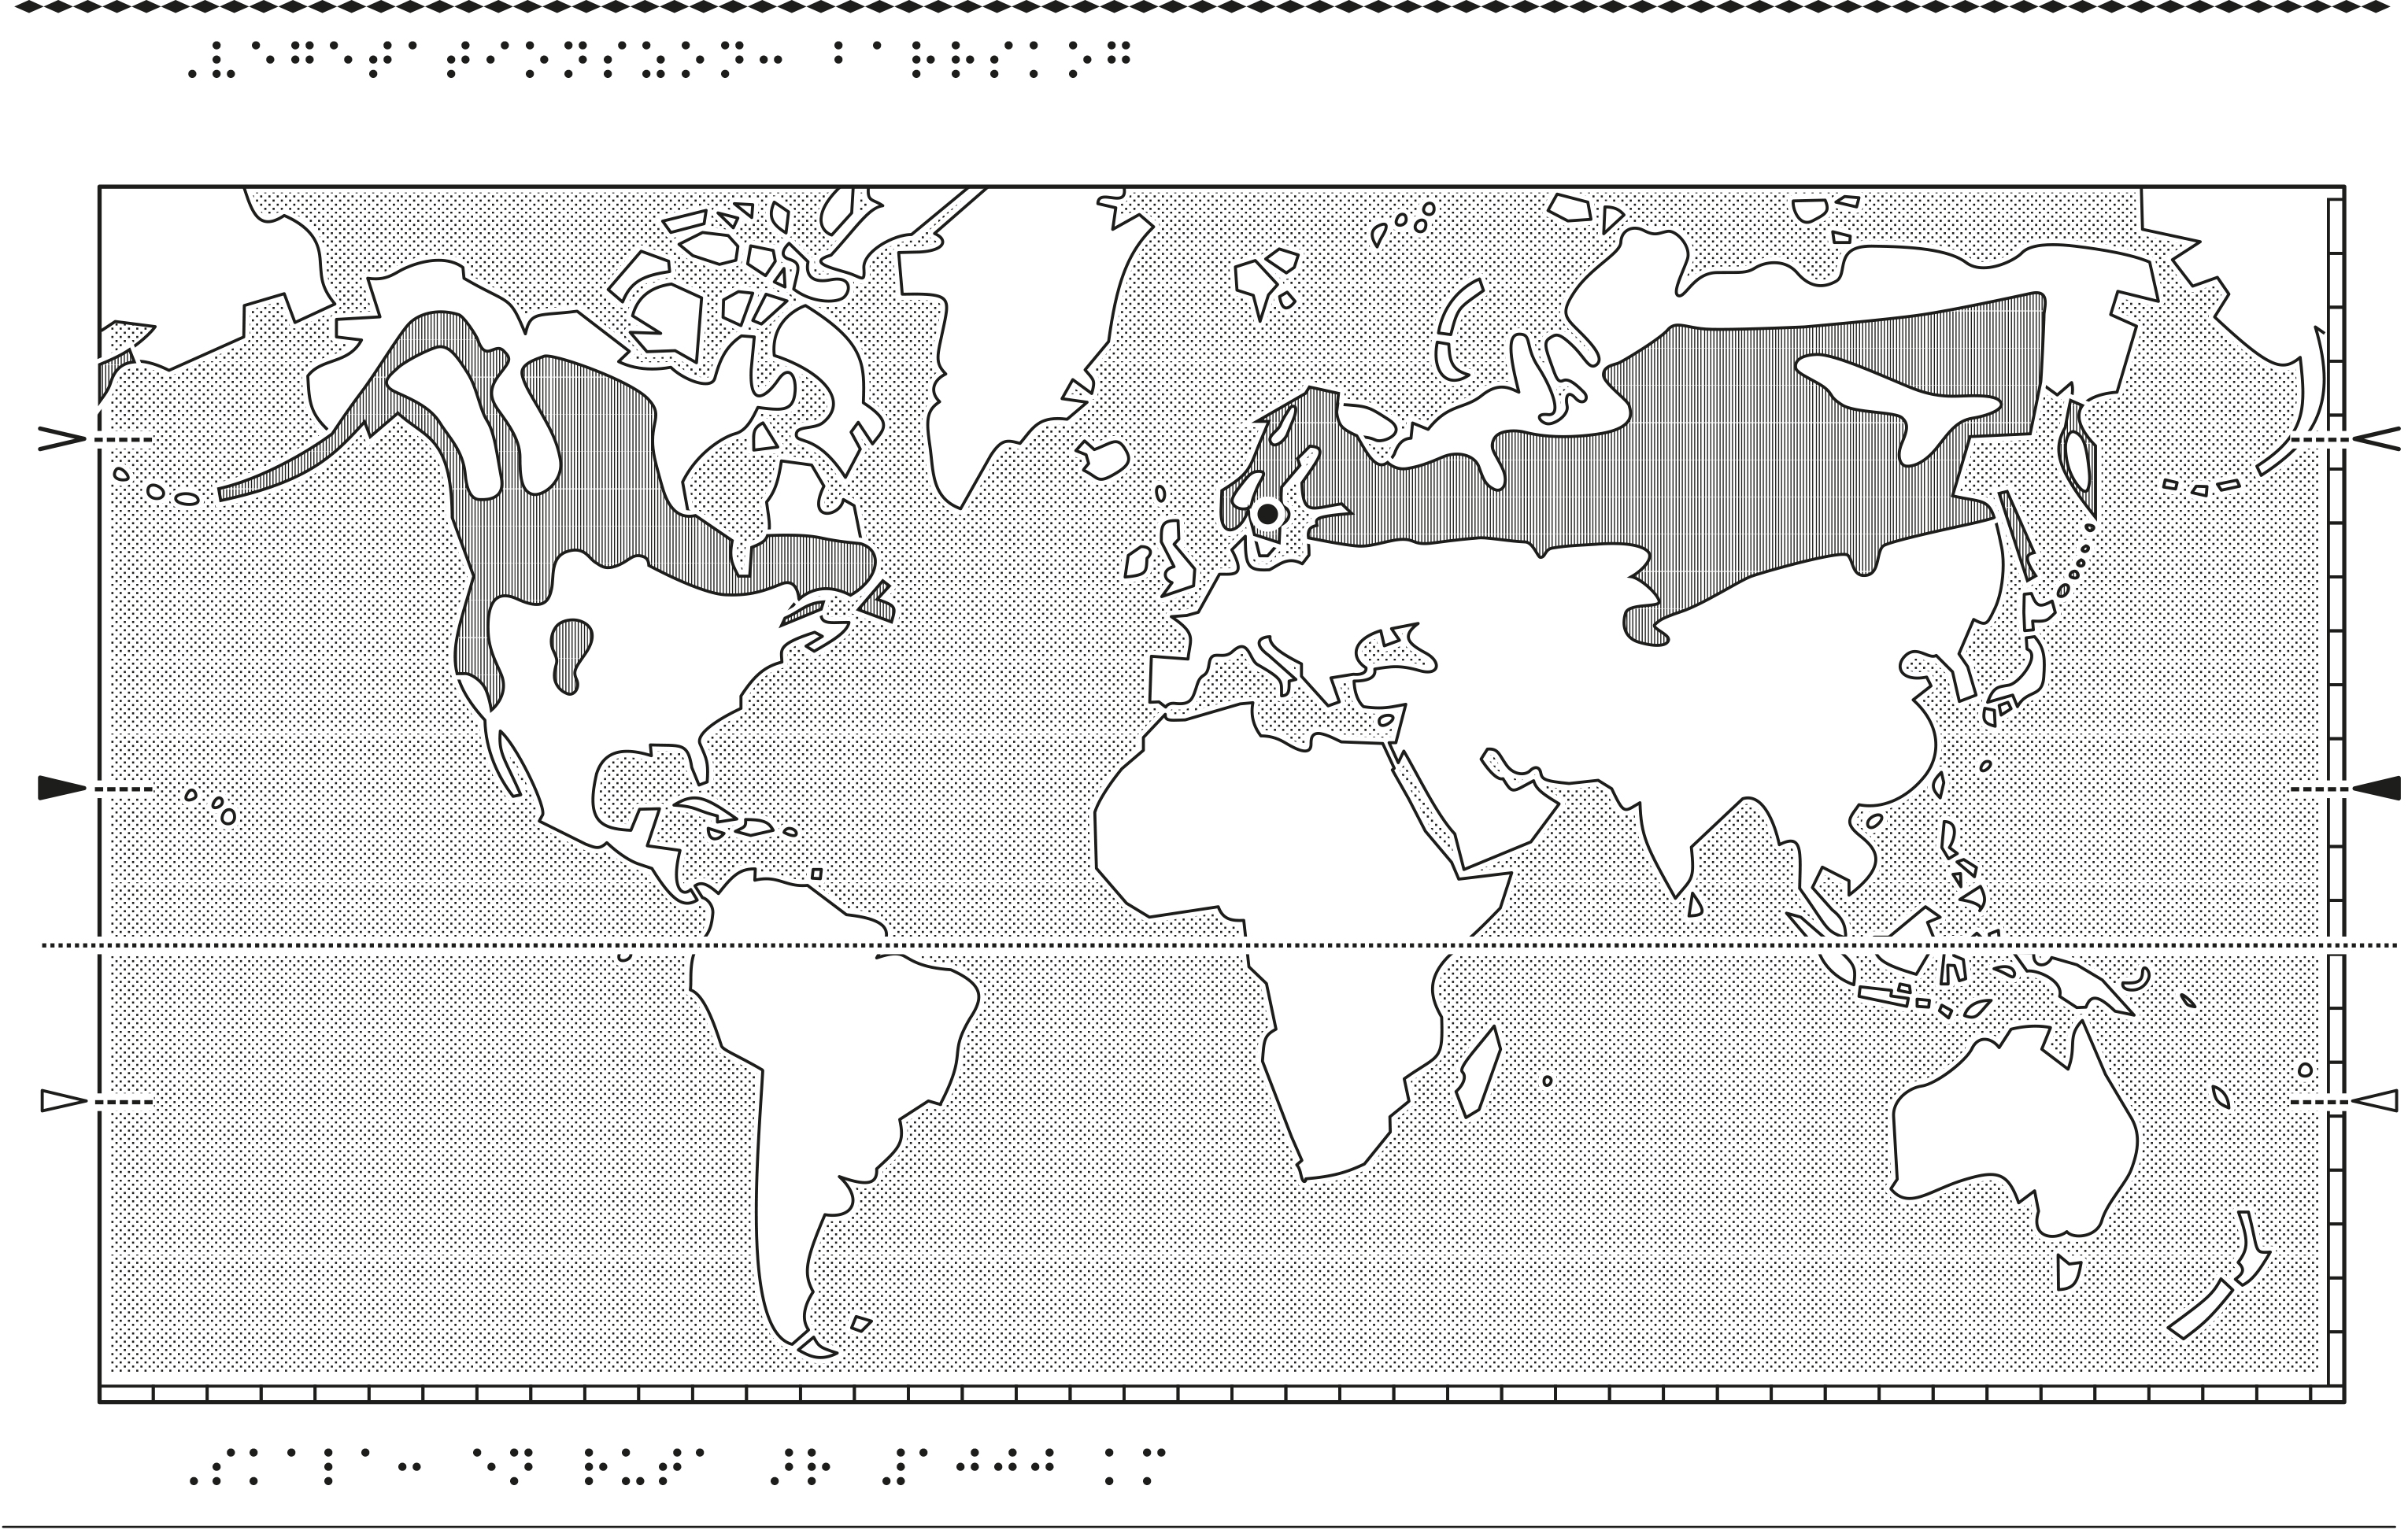 Världskarta i relief med barrskog markerat.